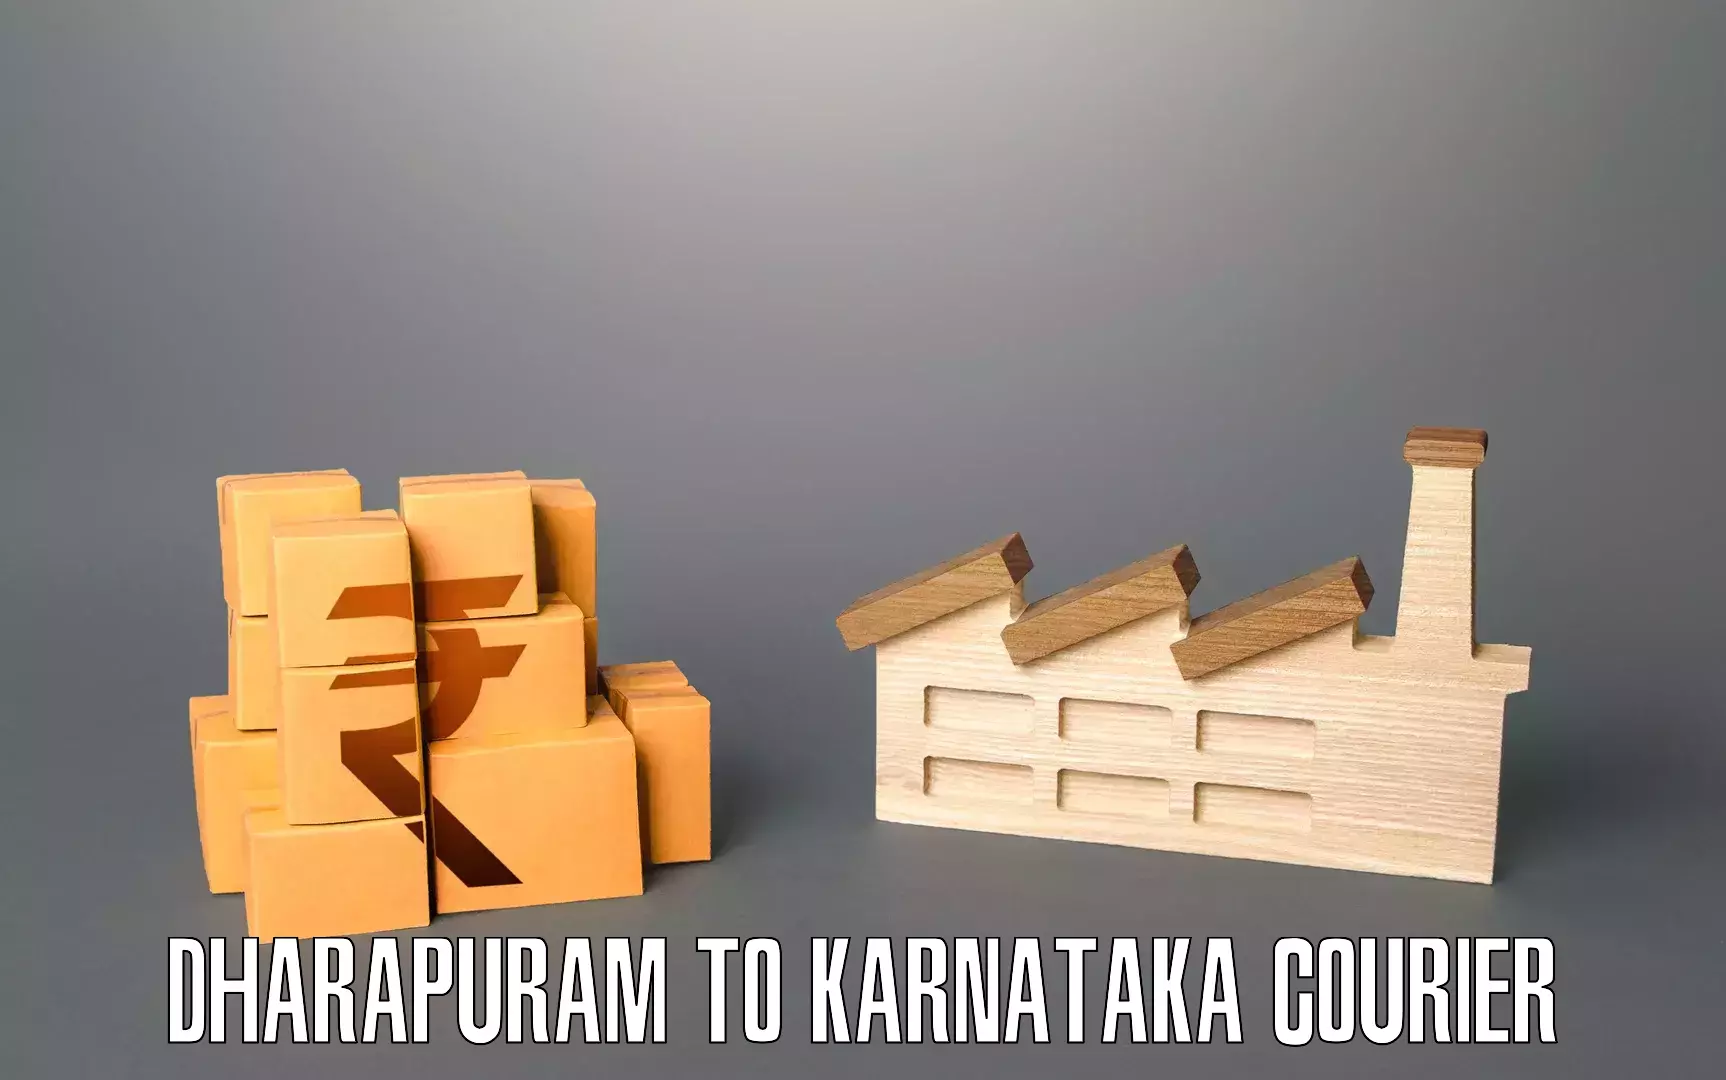 Furniture moving service Dharapuram to Karnataka